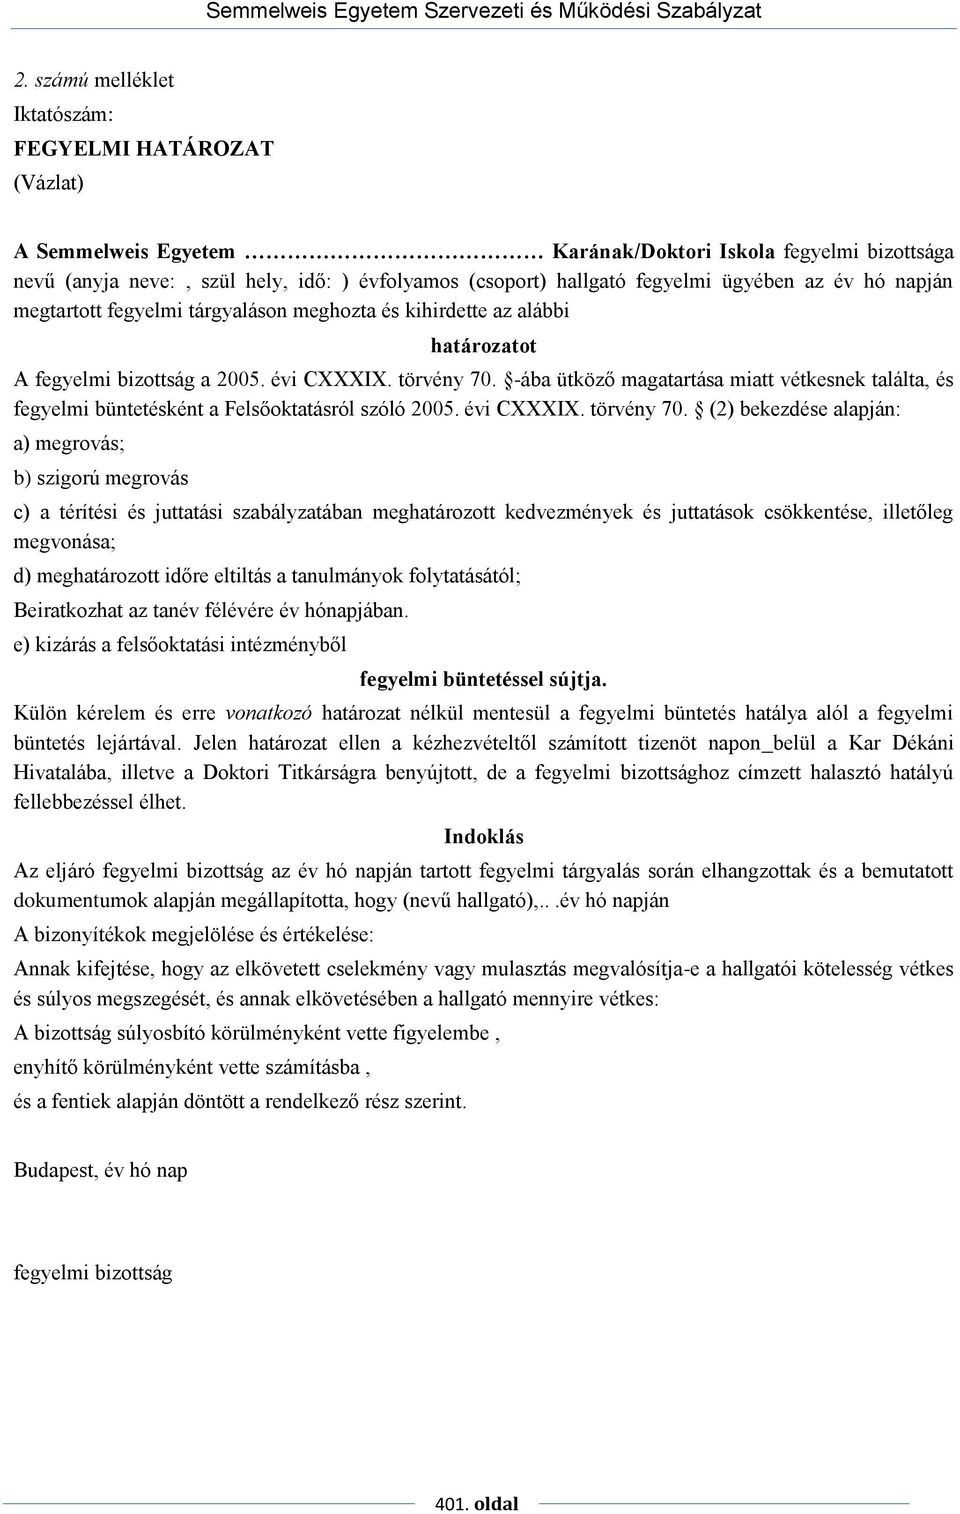 Semmelweis Egyetem Szervezeti és Működési Szabályzat. V. fejezet - PDF  Ingyenes letöltés